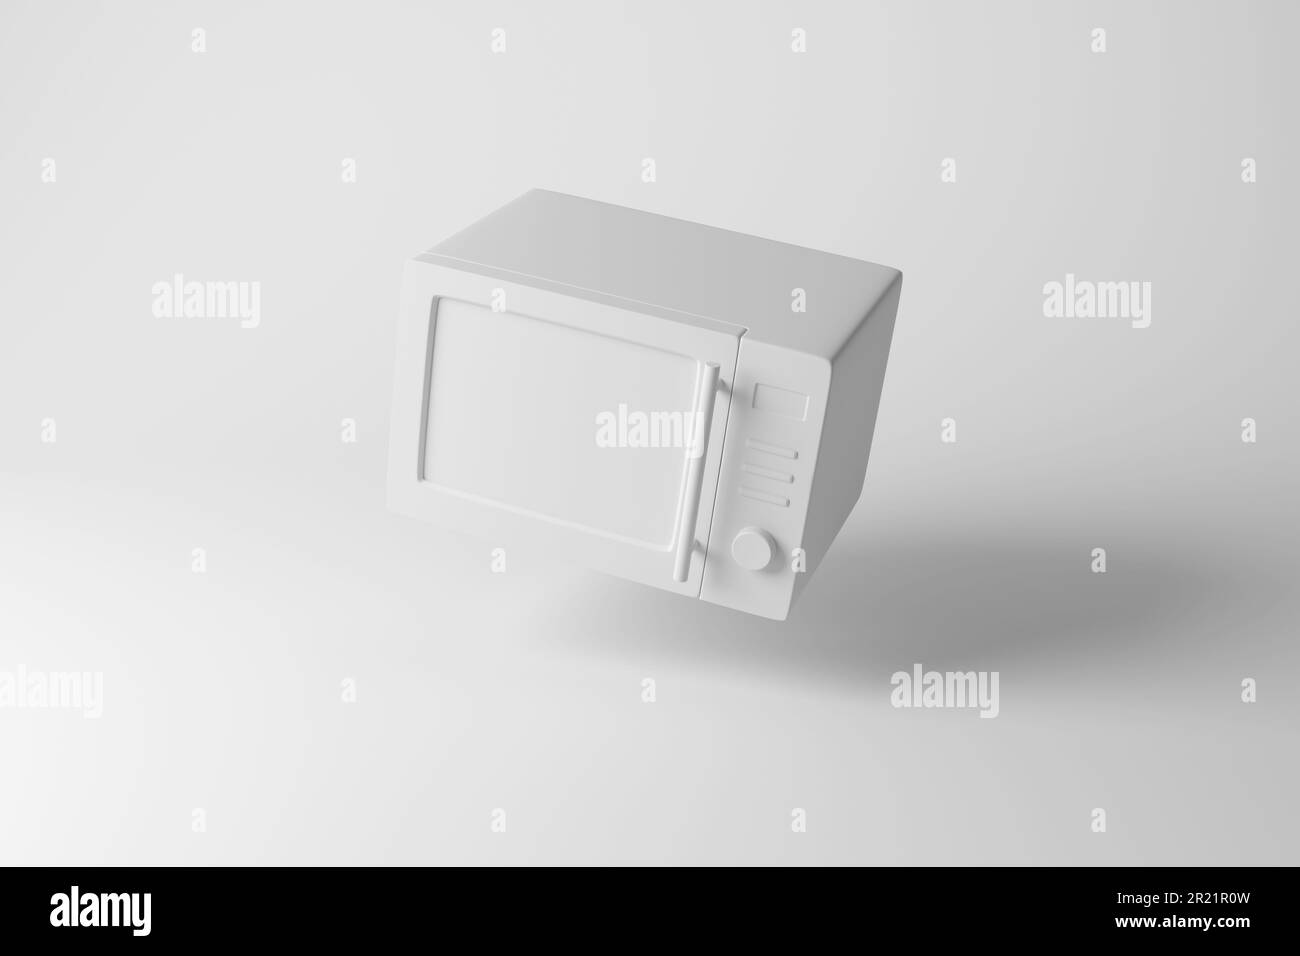 Design minimaliste d'un four à micro-ondes blanc flottant sur fond blanc avec ombre. Illustration du concept d'appareil domestique Banque D'Images